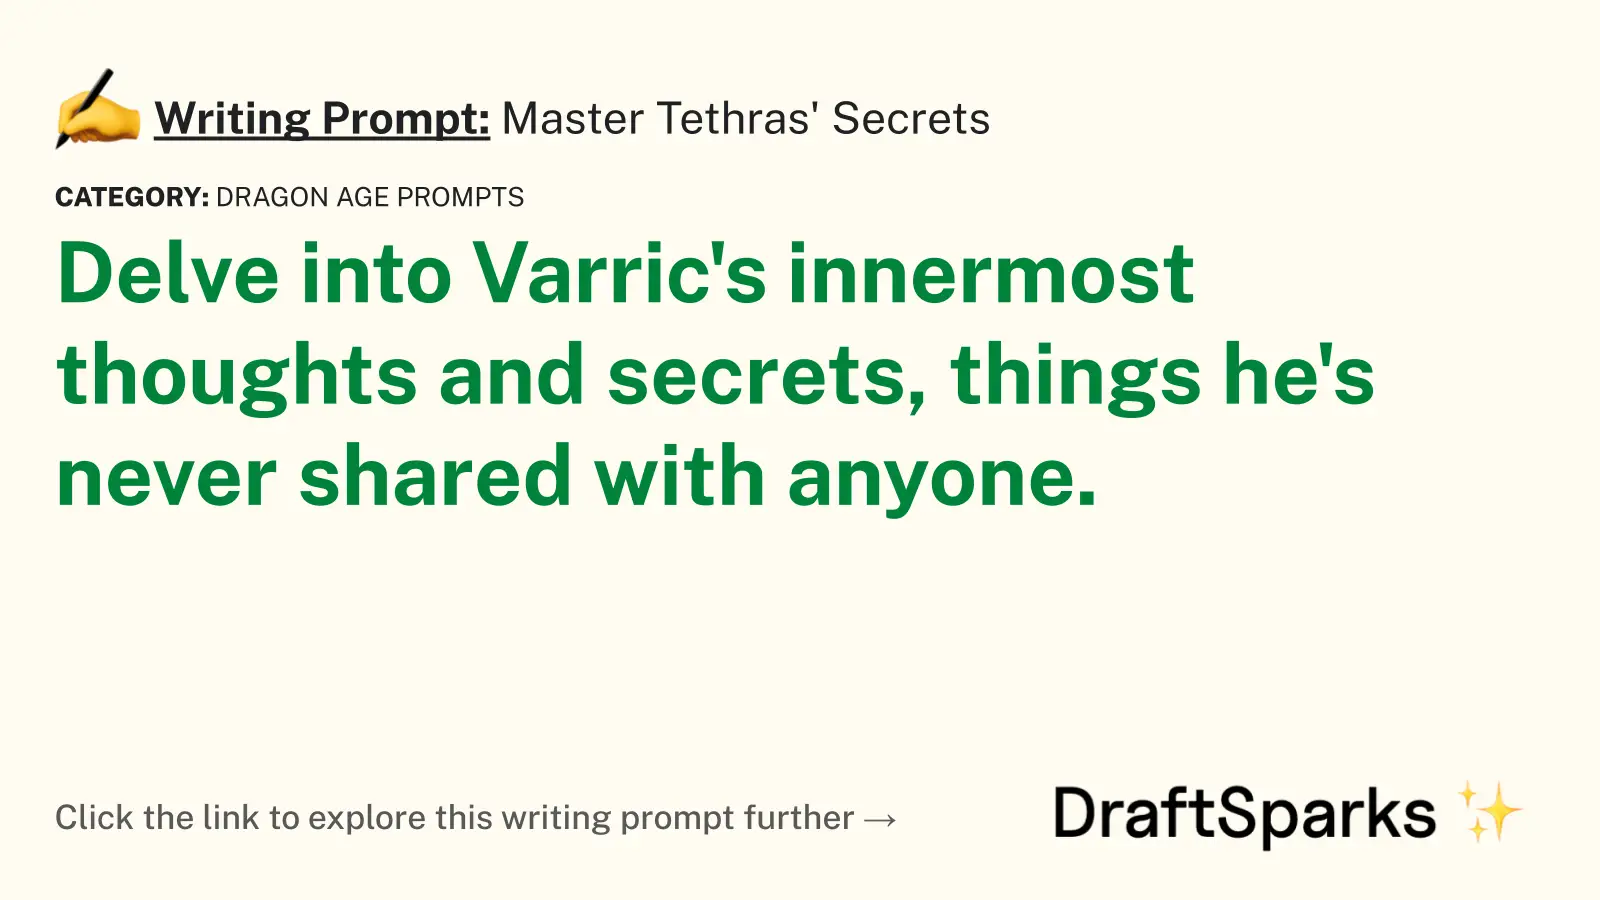 Master Tethras’ Secrets